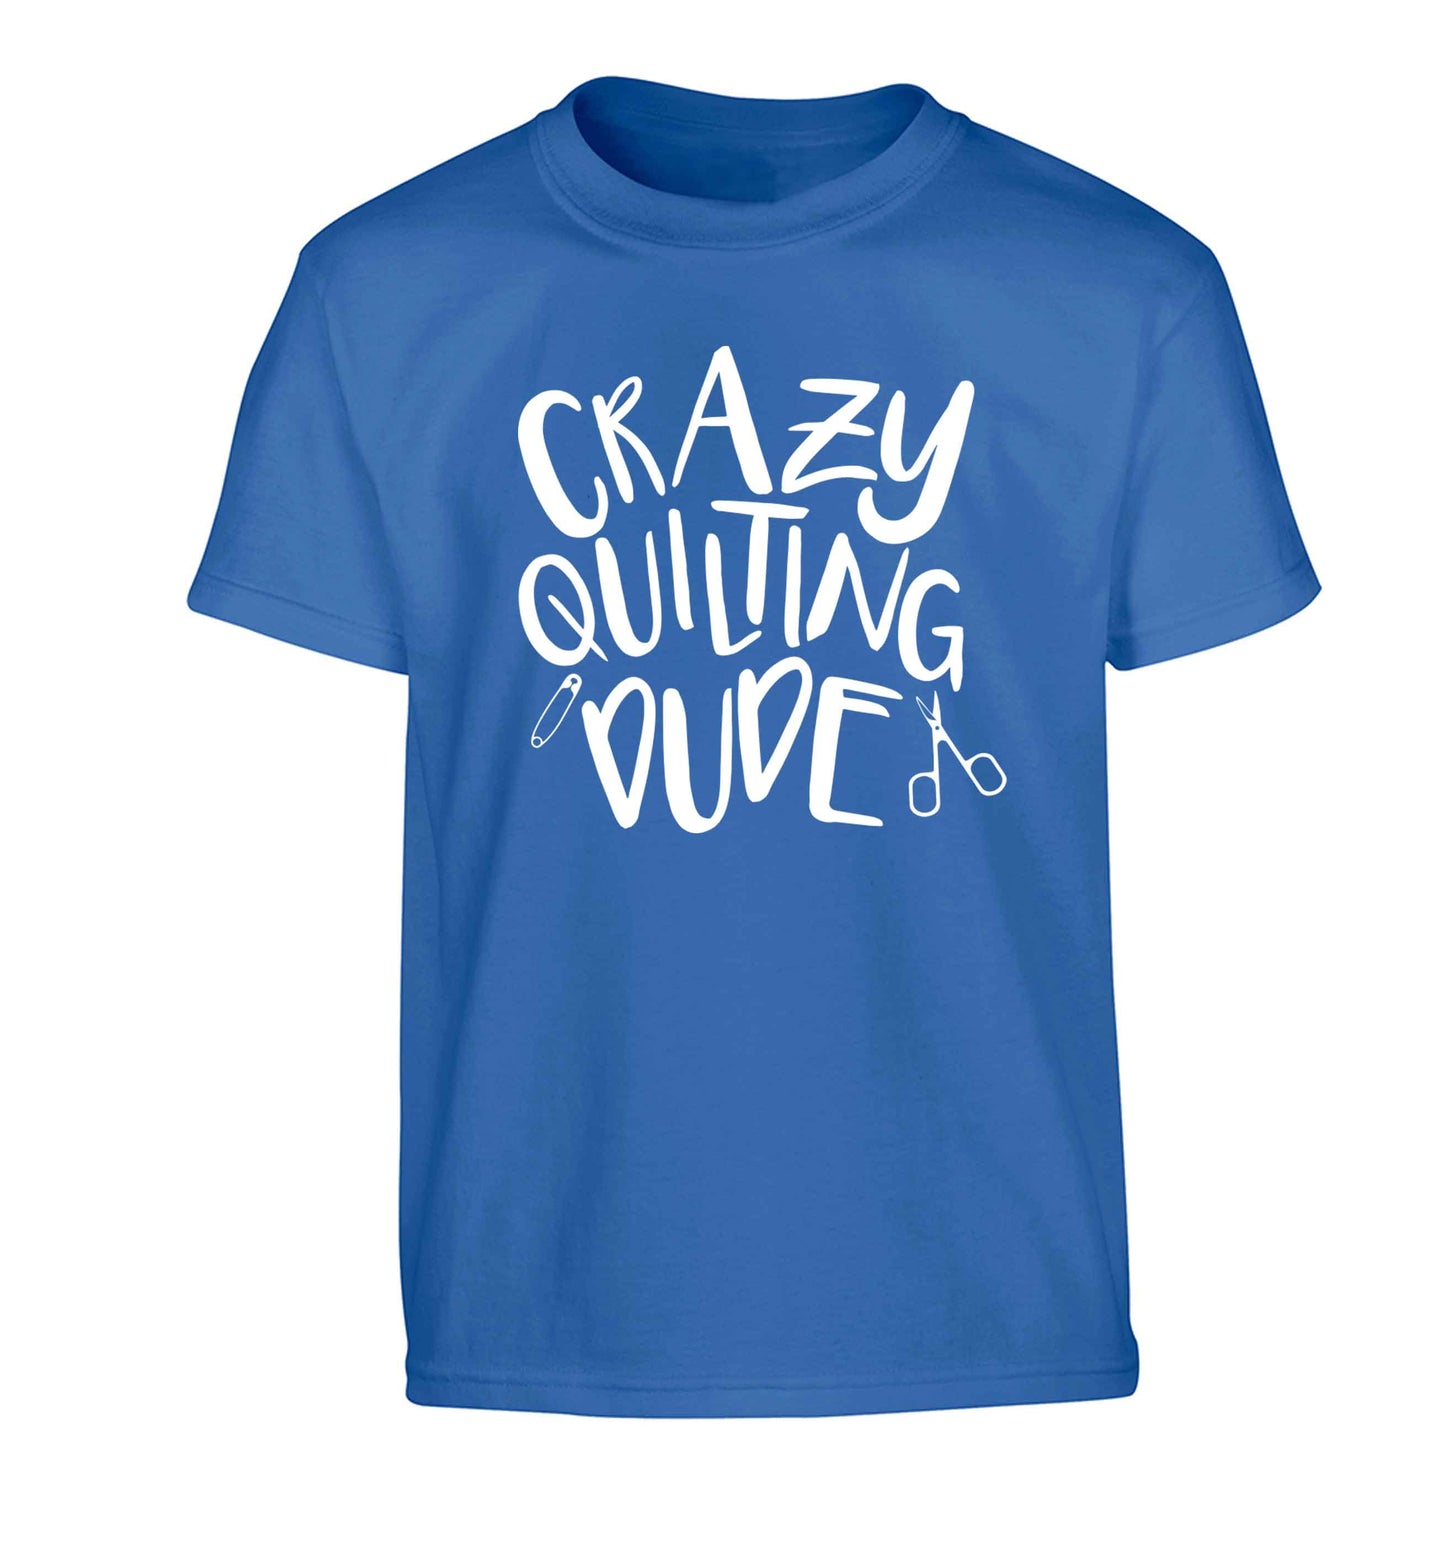 Crazy quilting dude Children's blue Tshirt 12-13 Years